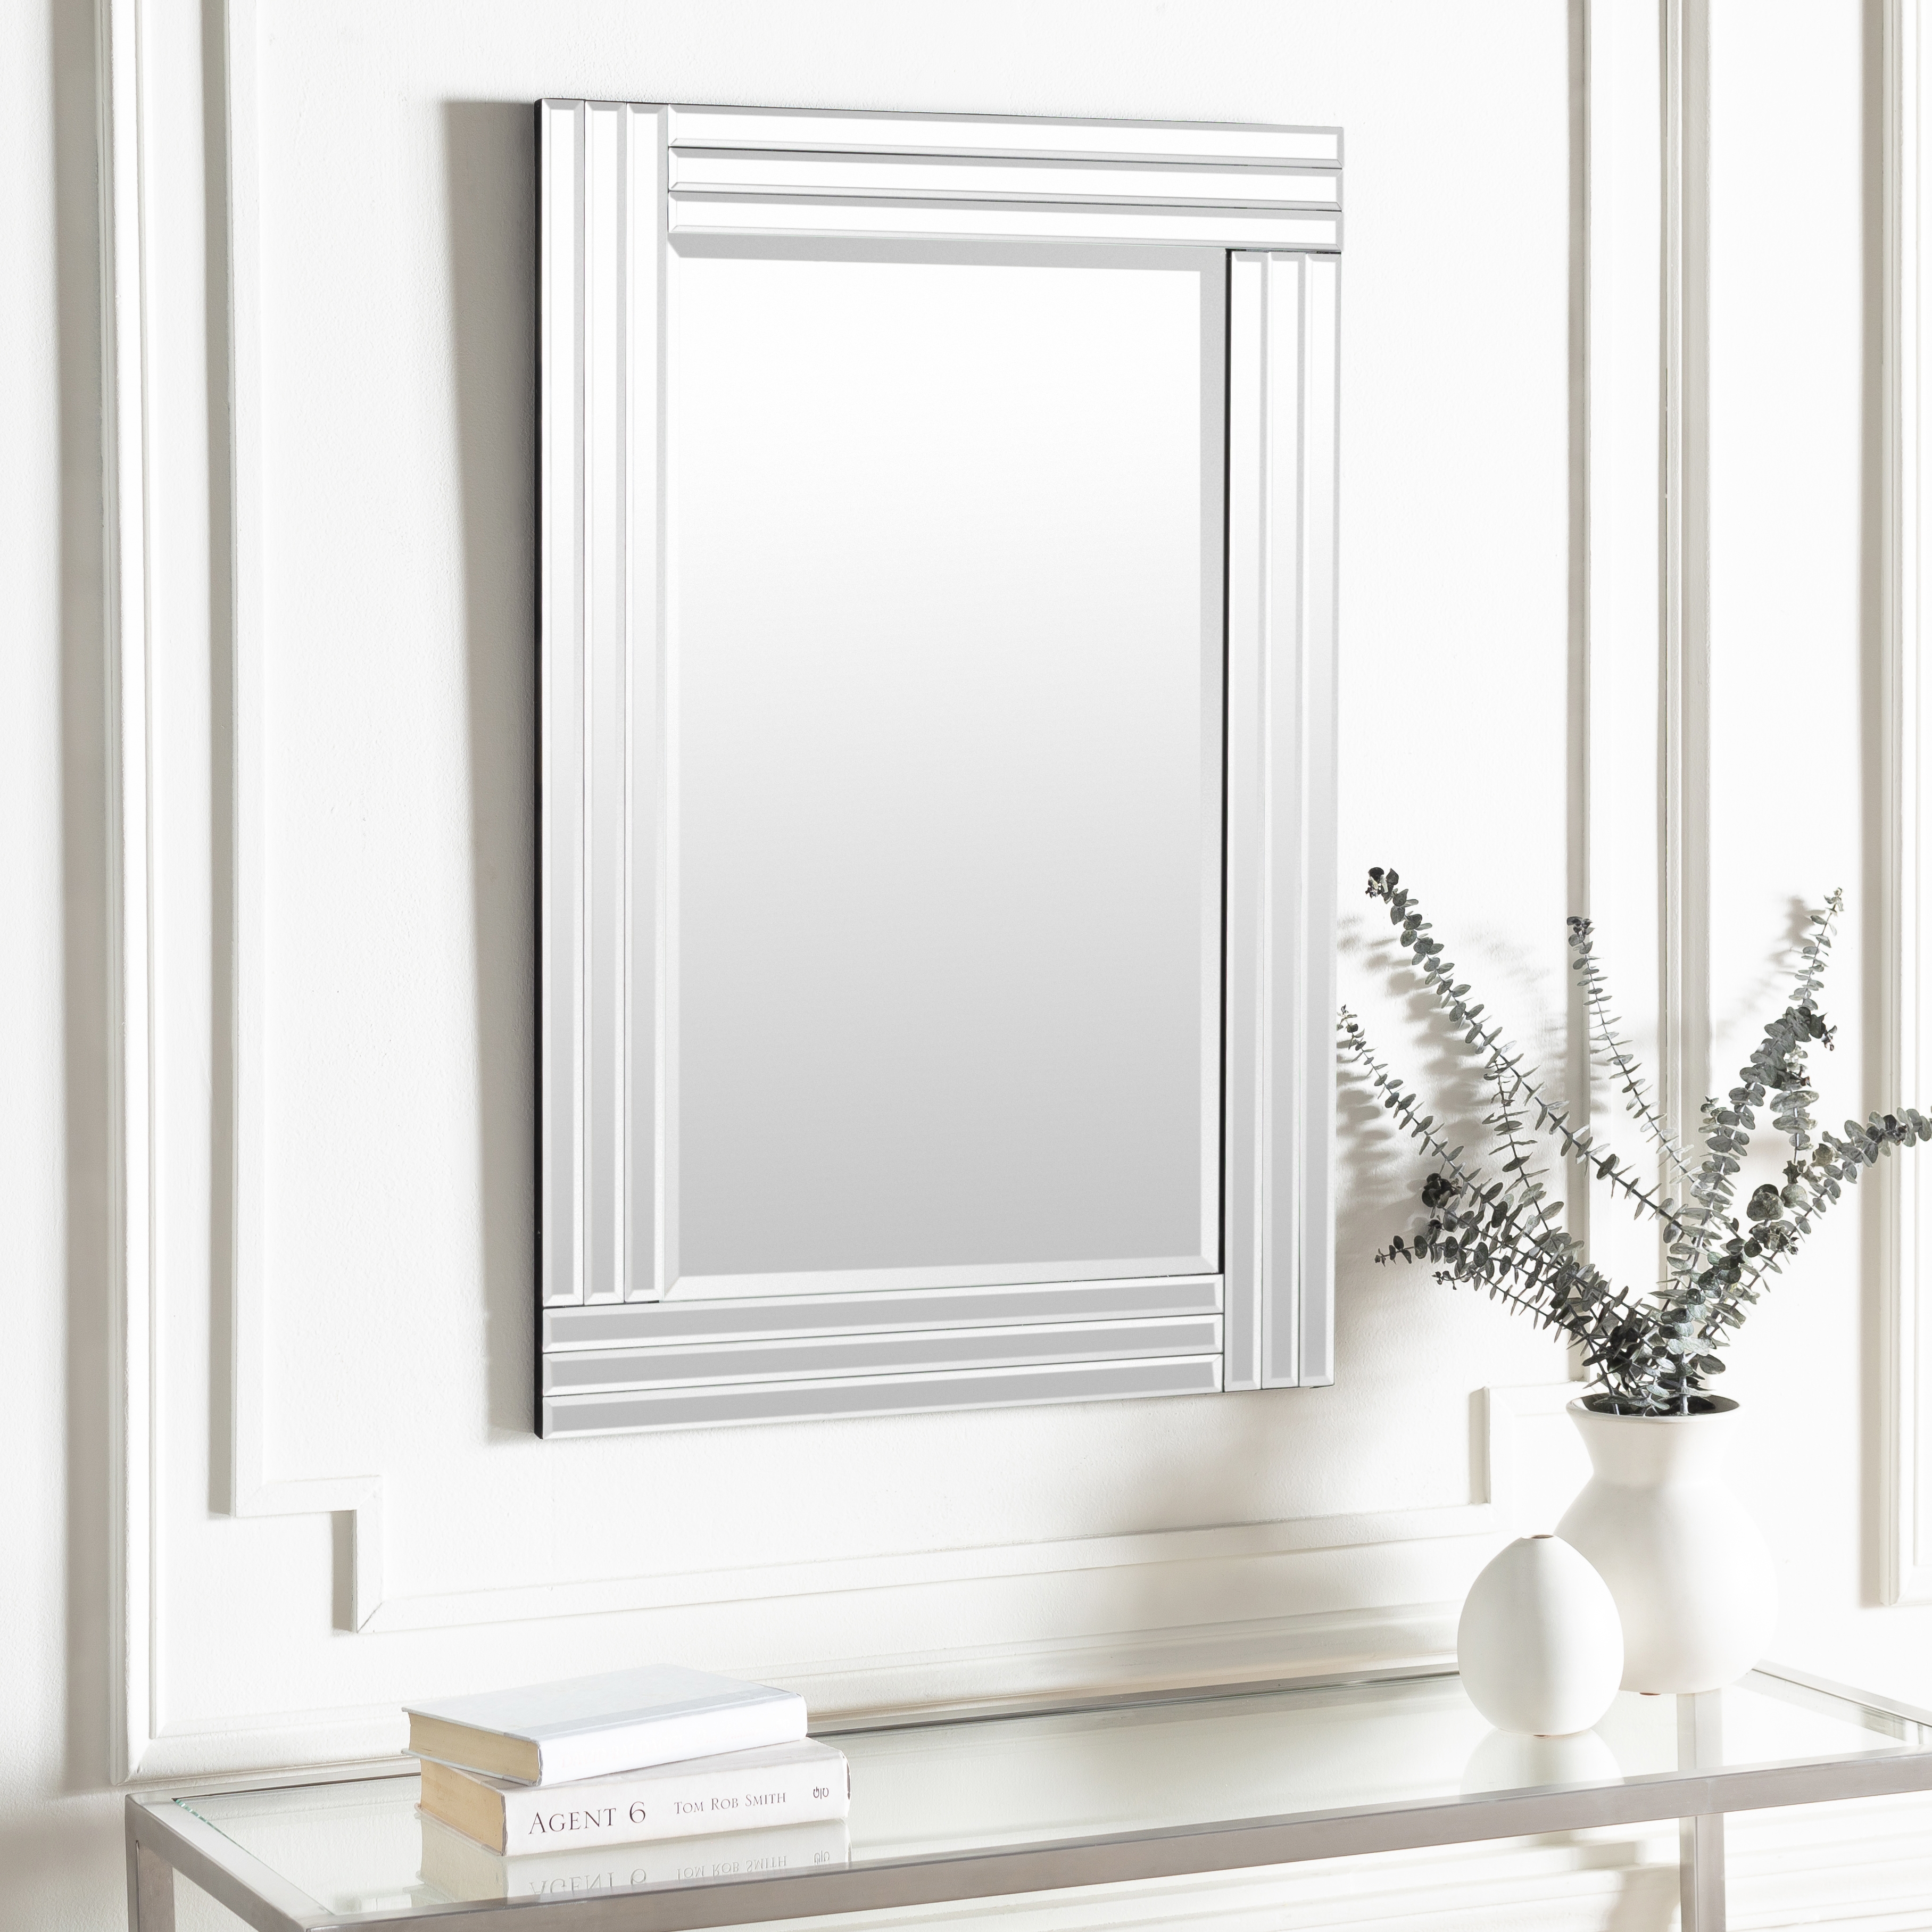 Seymore Mirror, 40"H x 30"W x 2"D - Image 1